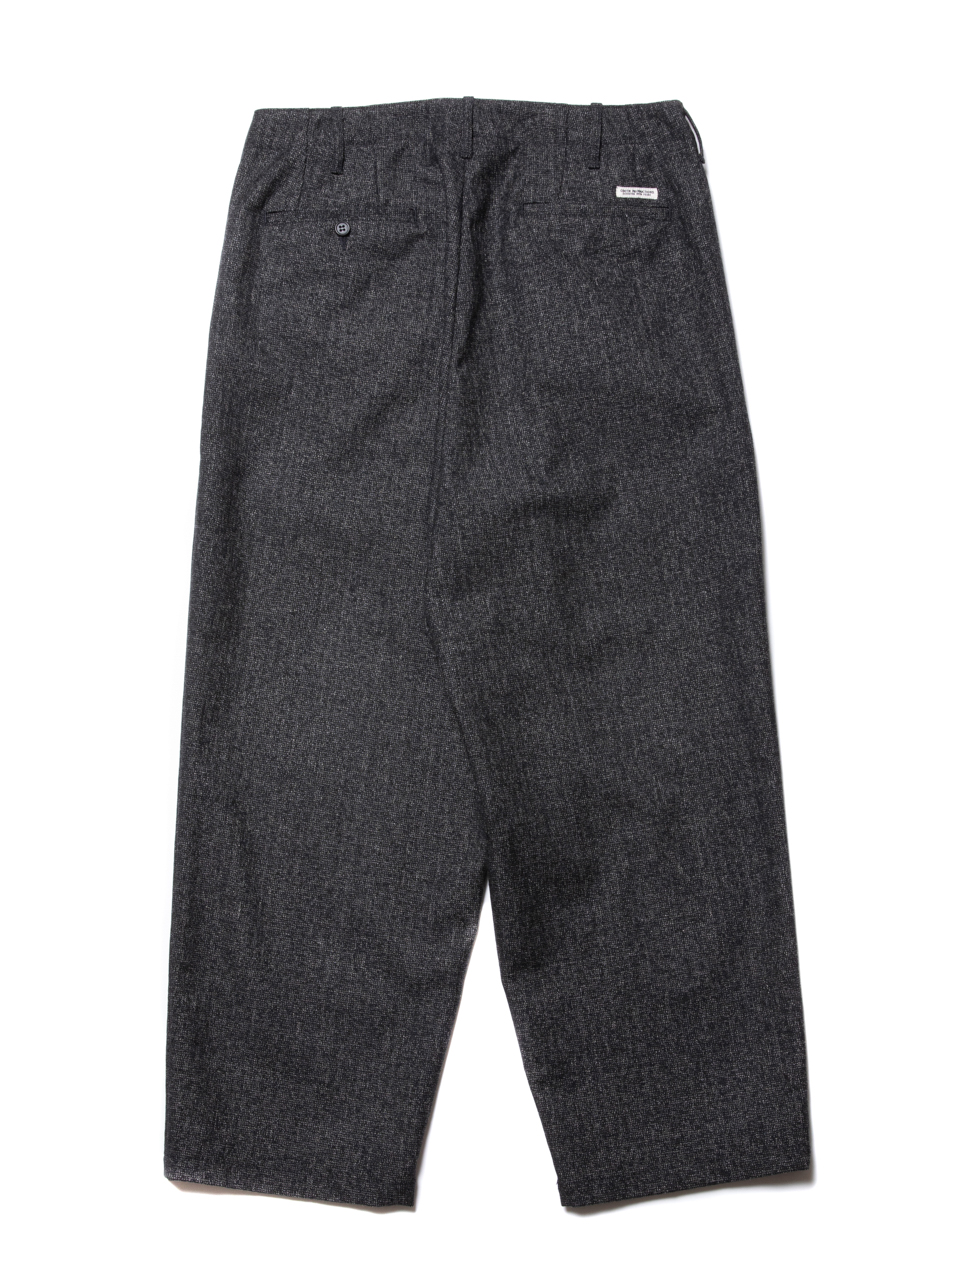 COOTIE / Melange Wool 2 Tuck Trousers -Melange- | 80-HACHIMARU-